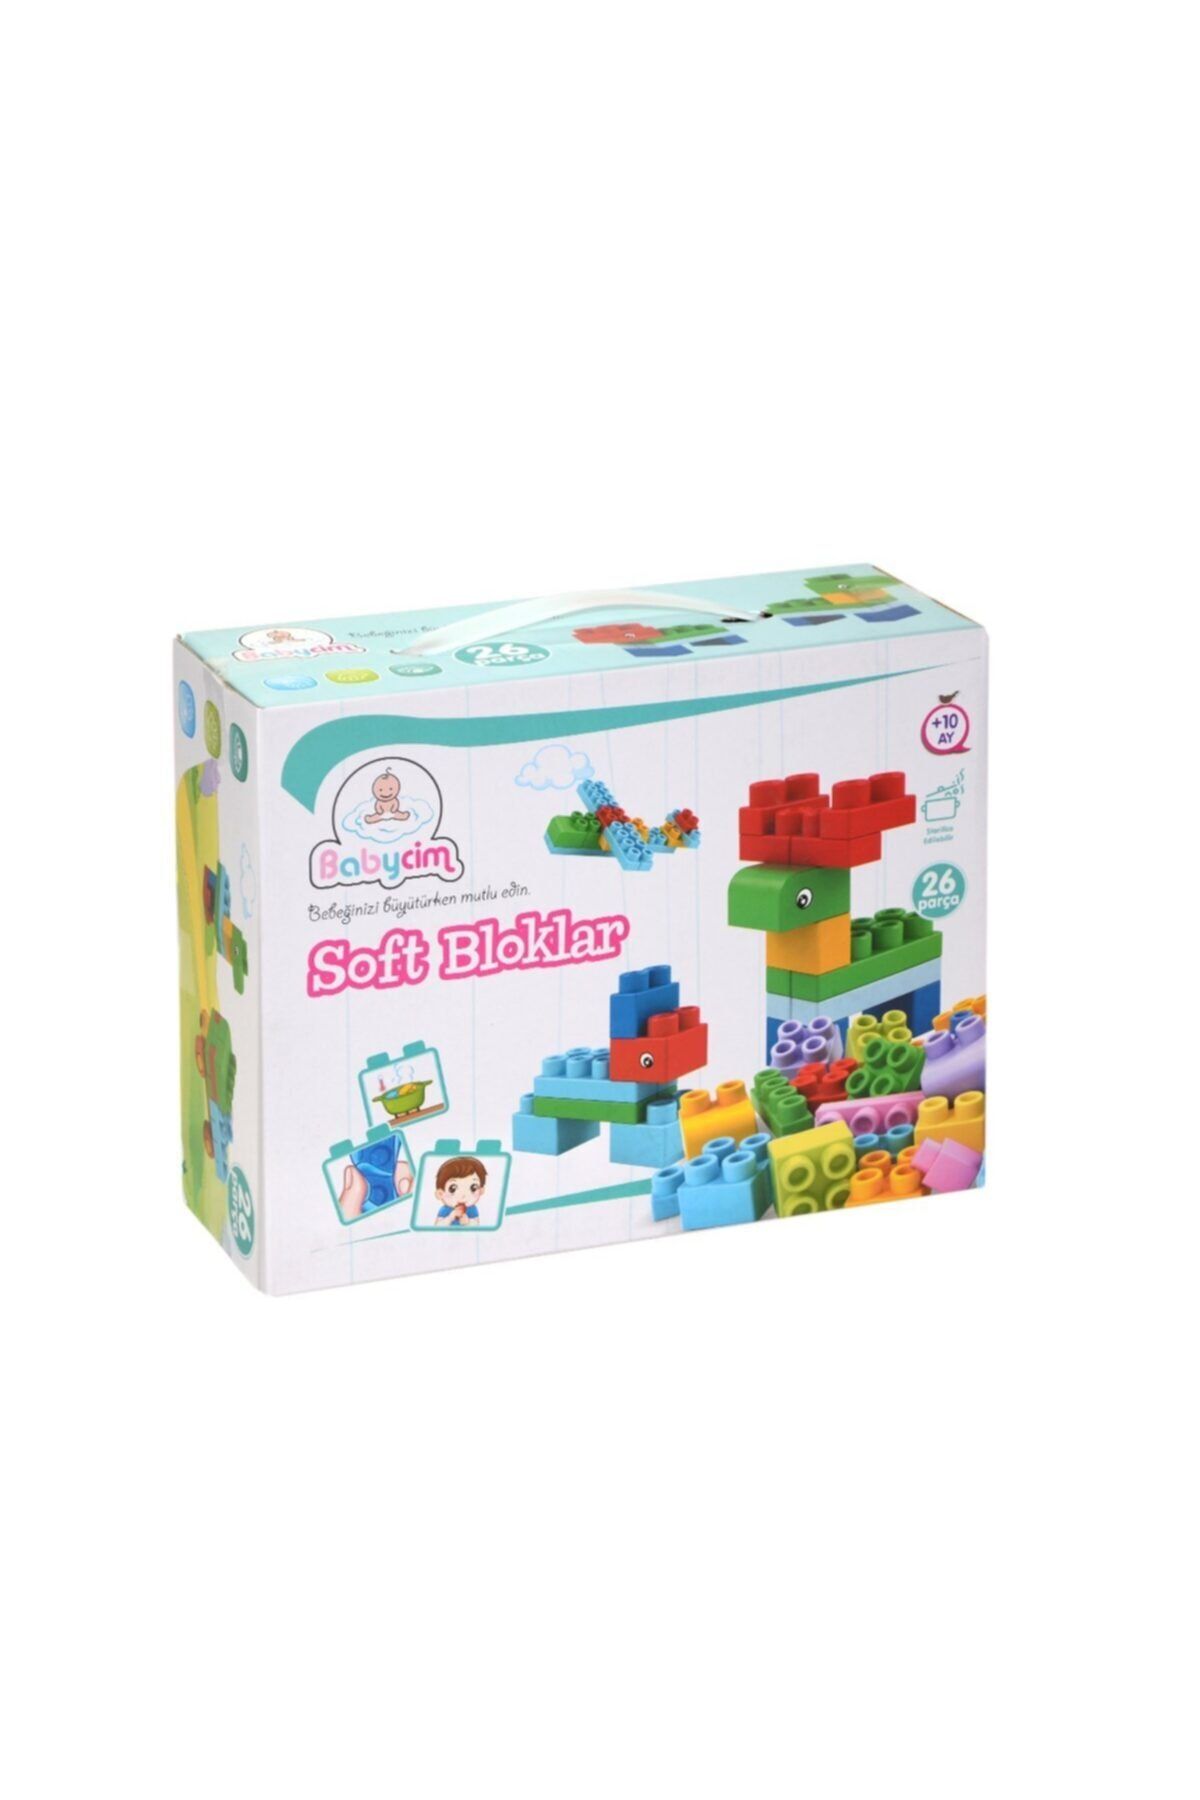 BİRLİK TOYS Babycim Soft Bloklar 26 Parça